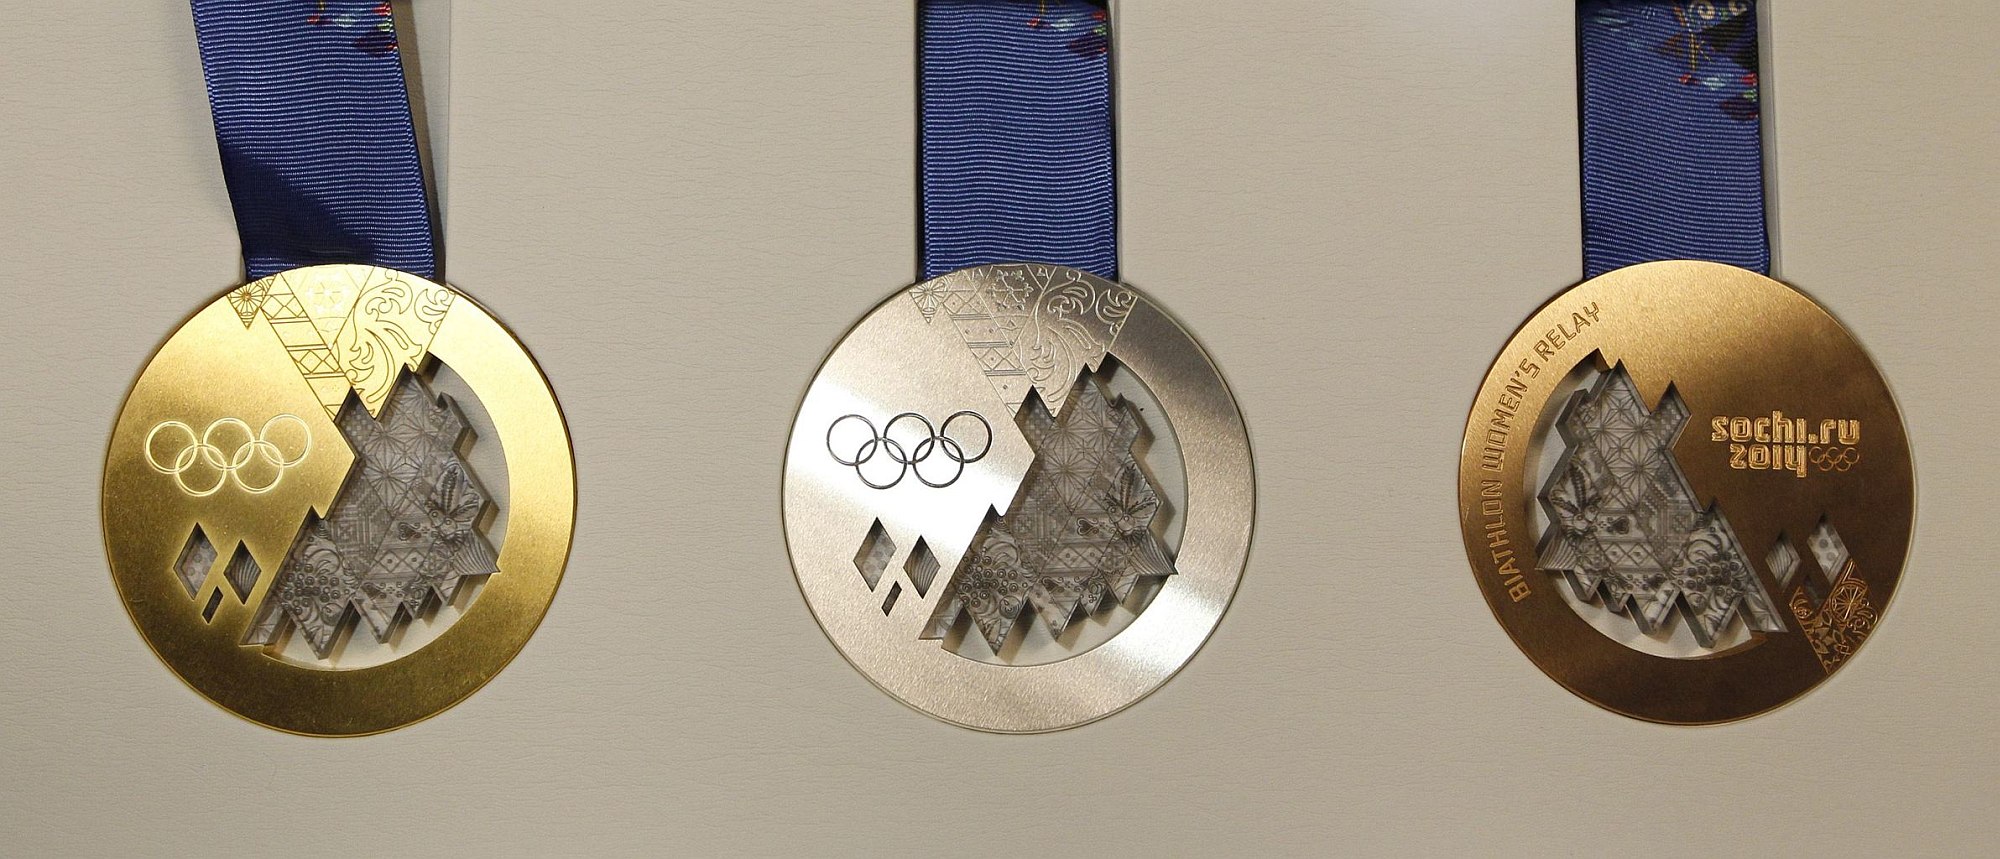 Олимпийская медаль 2014 года. Олимпийская Золотая медаль Сочи. Олимпийские игры в Сочи медали. Золотая медаль Сочи 2014.